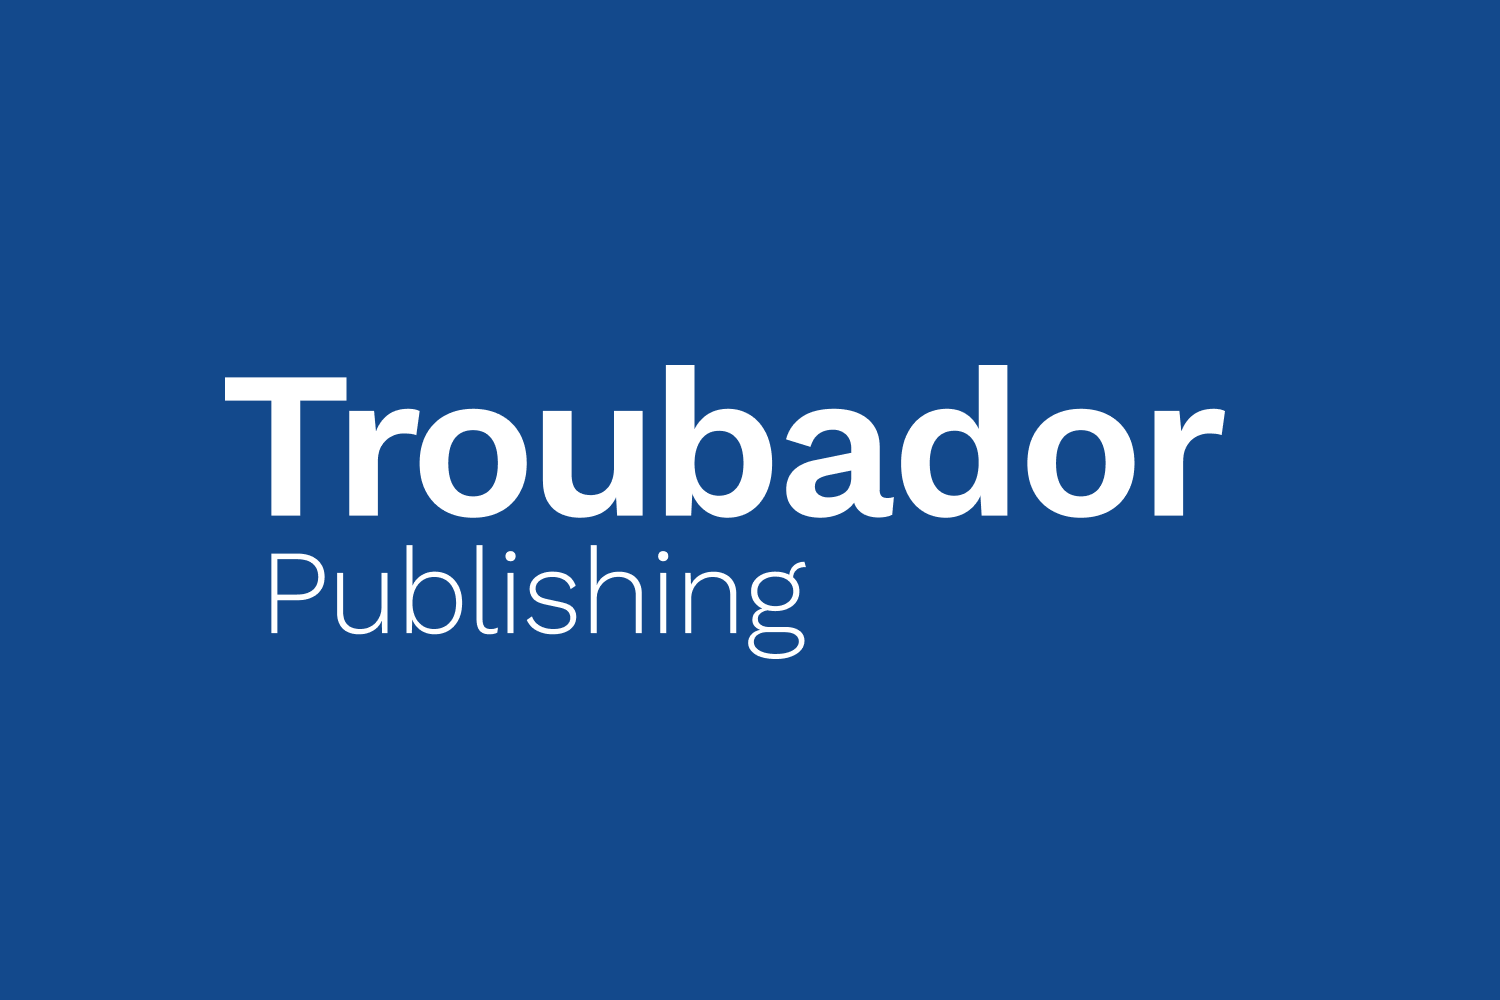 Troubador Publishing